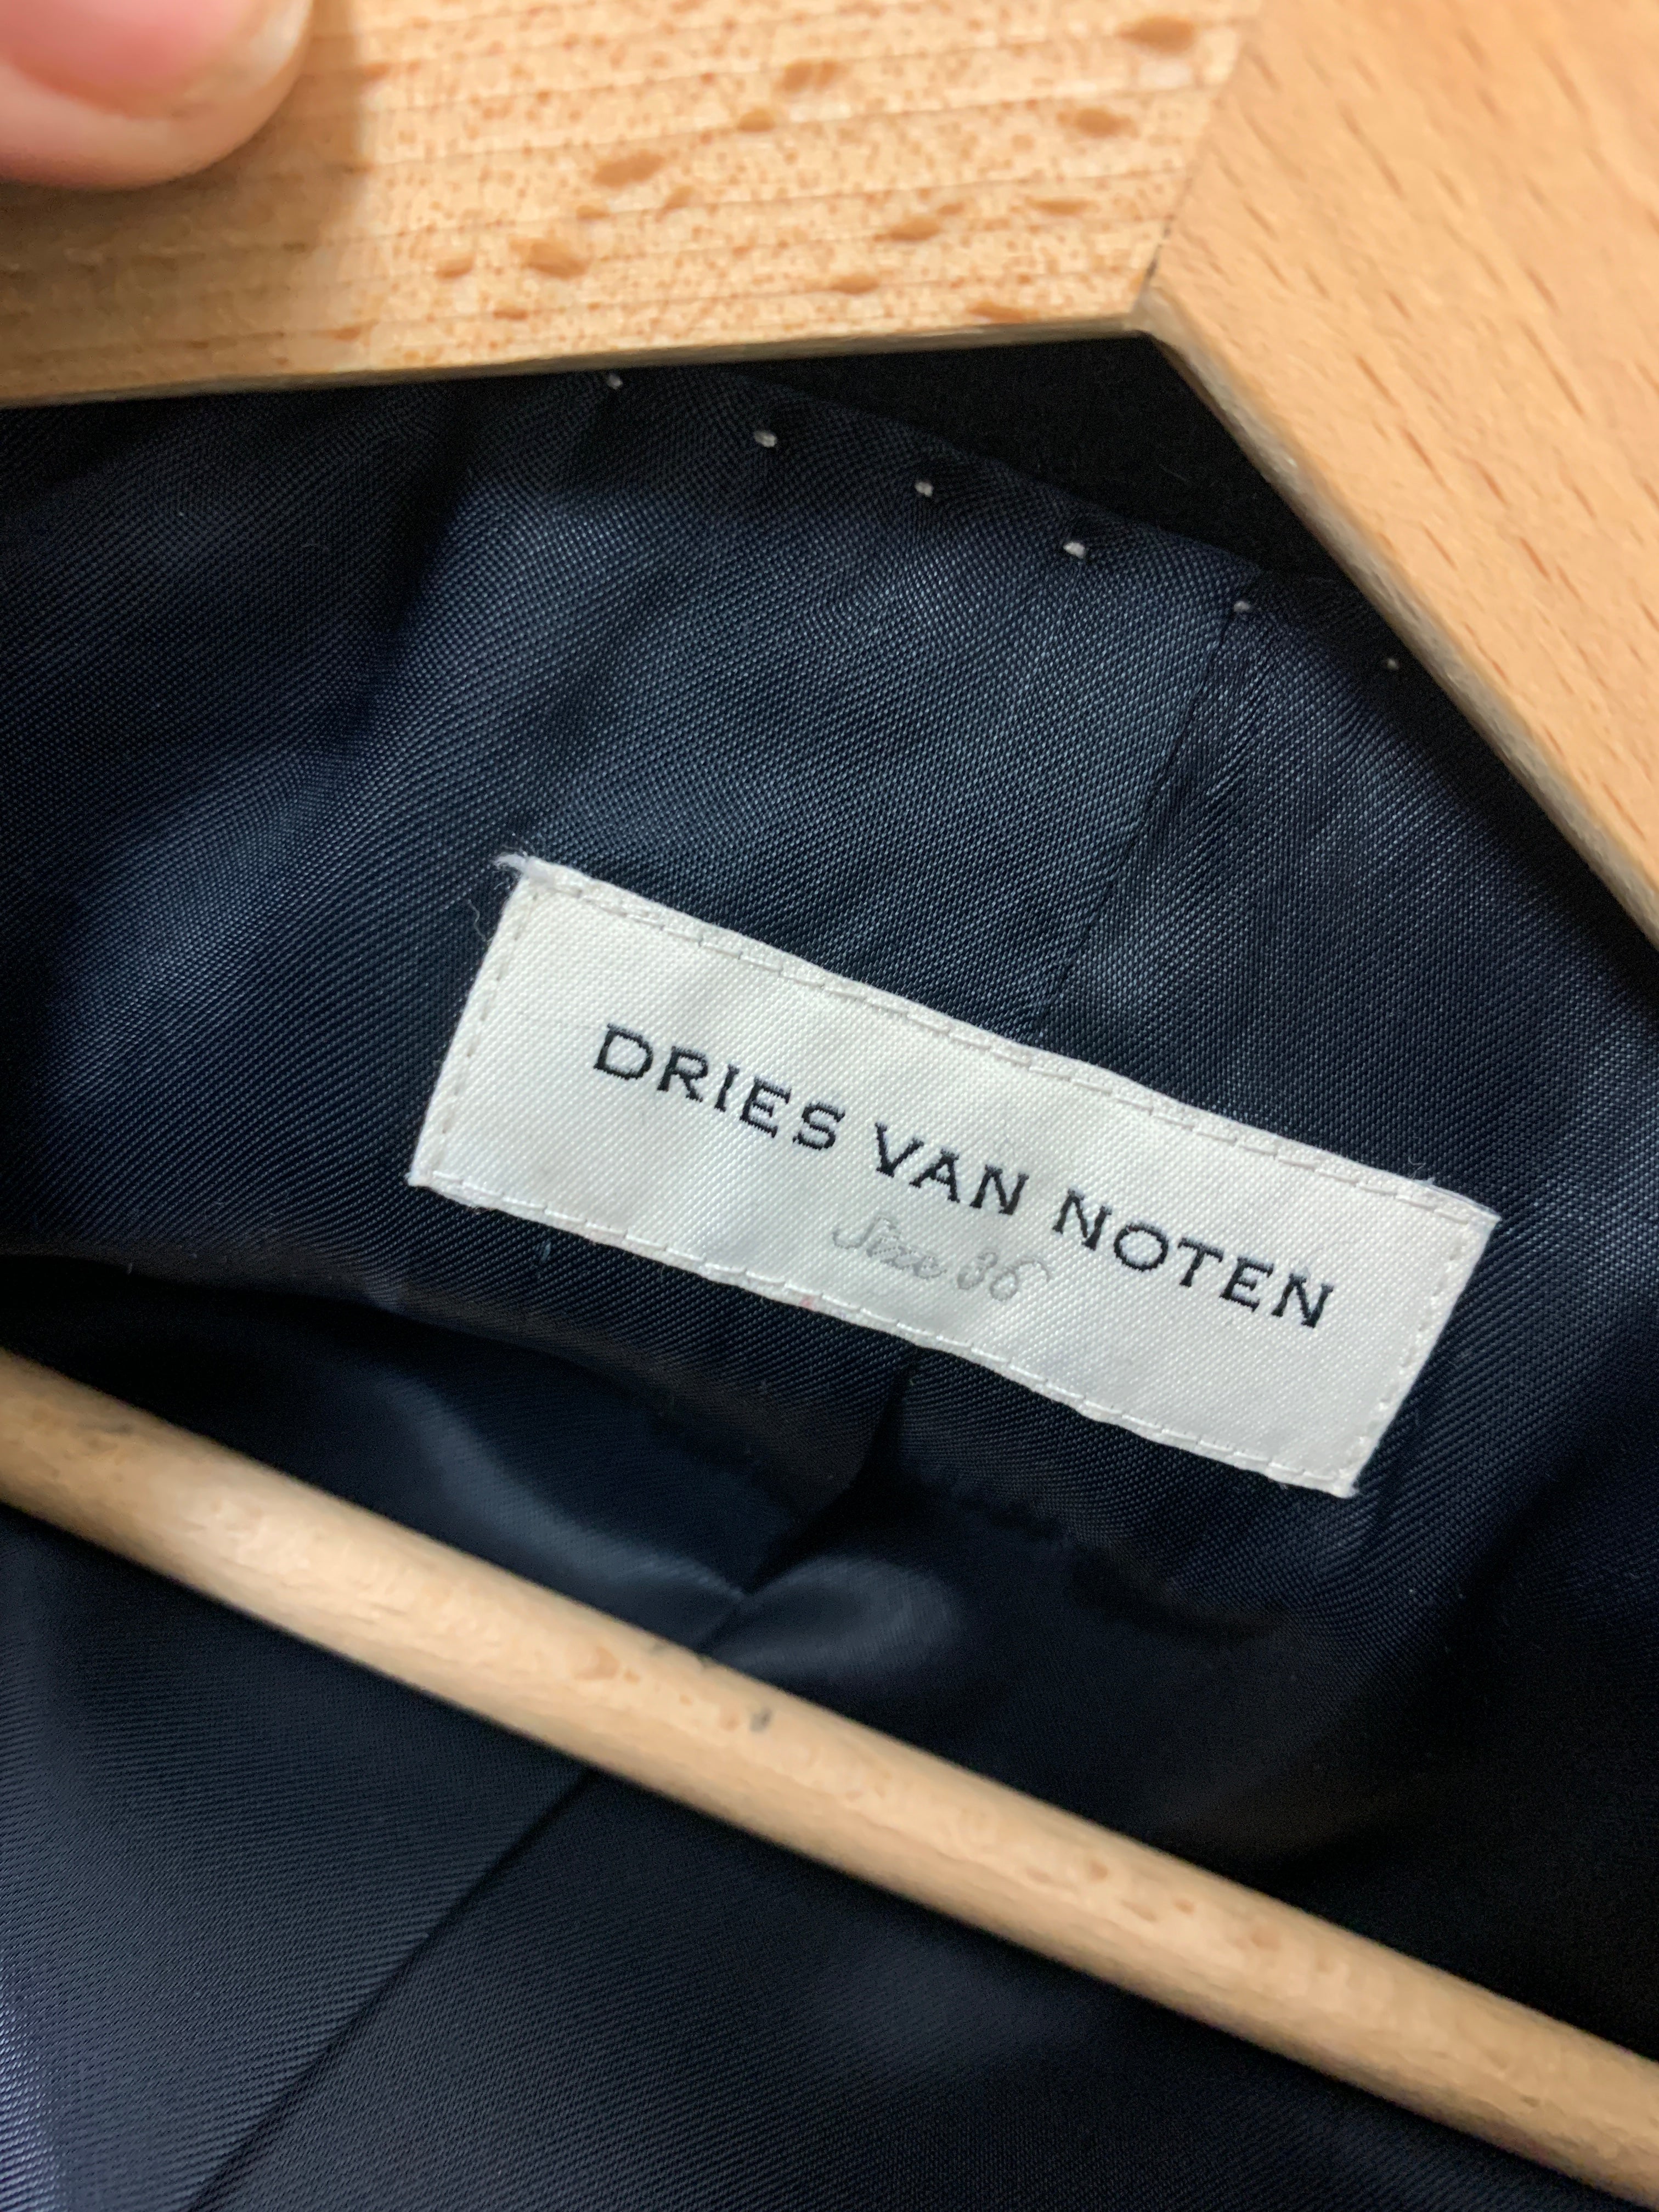 Dries Van Noten navy coat